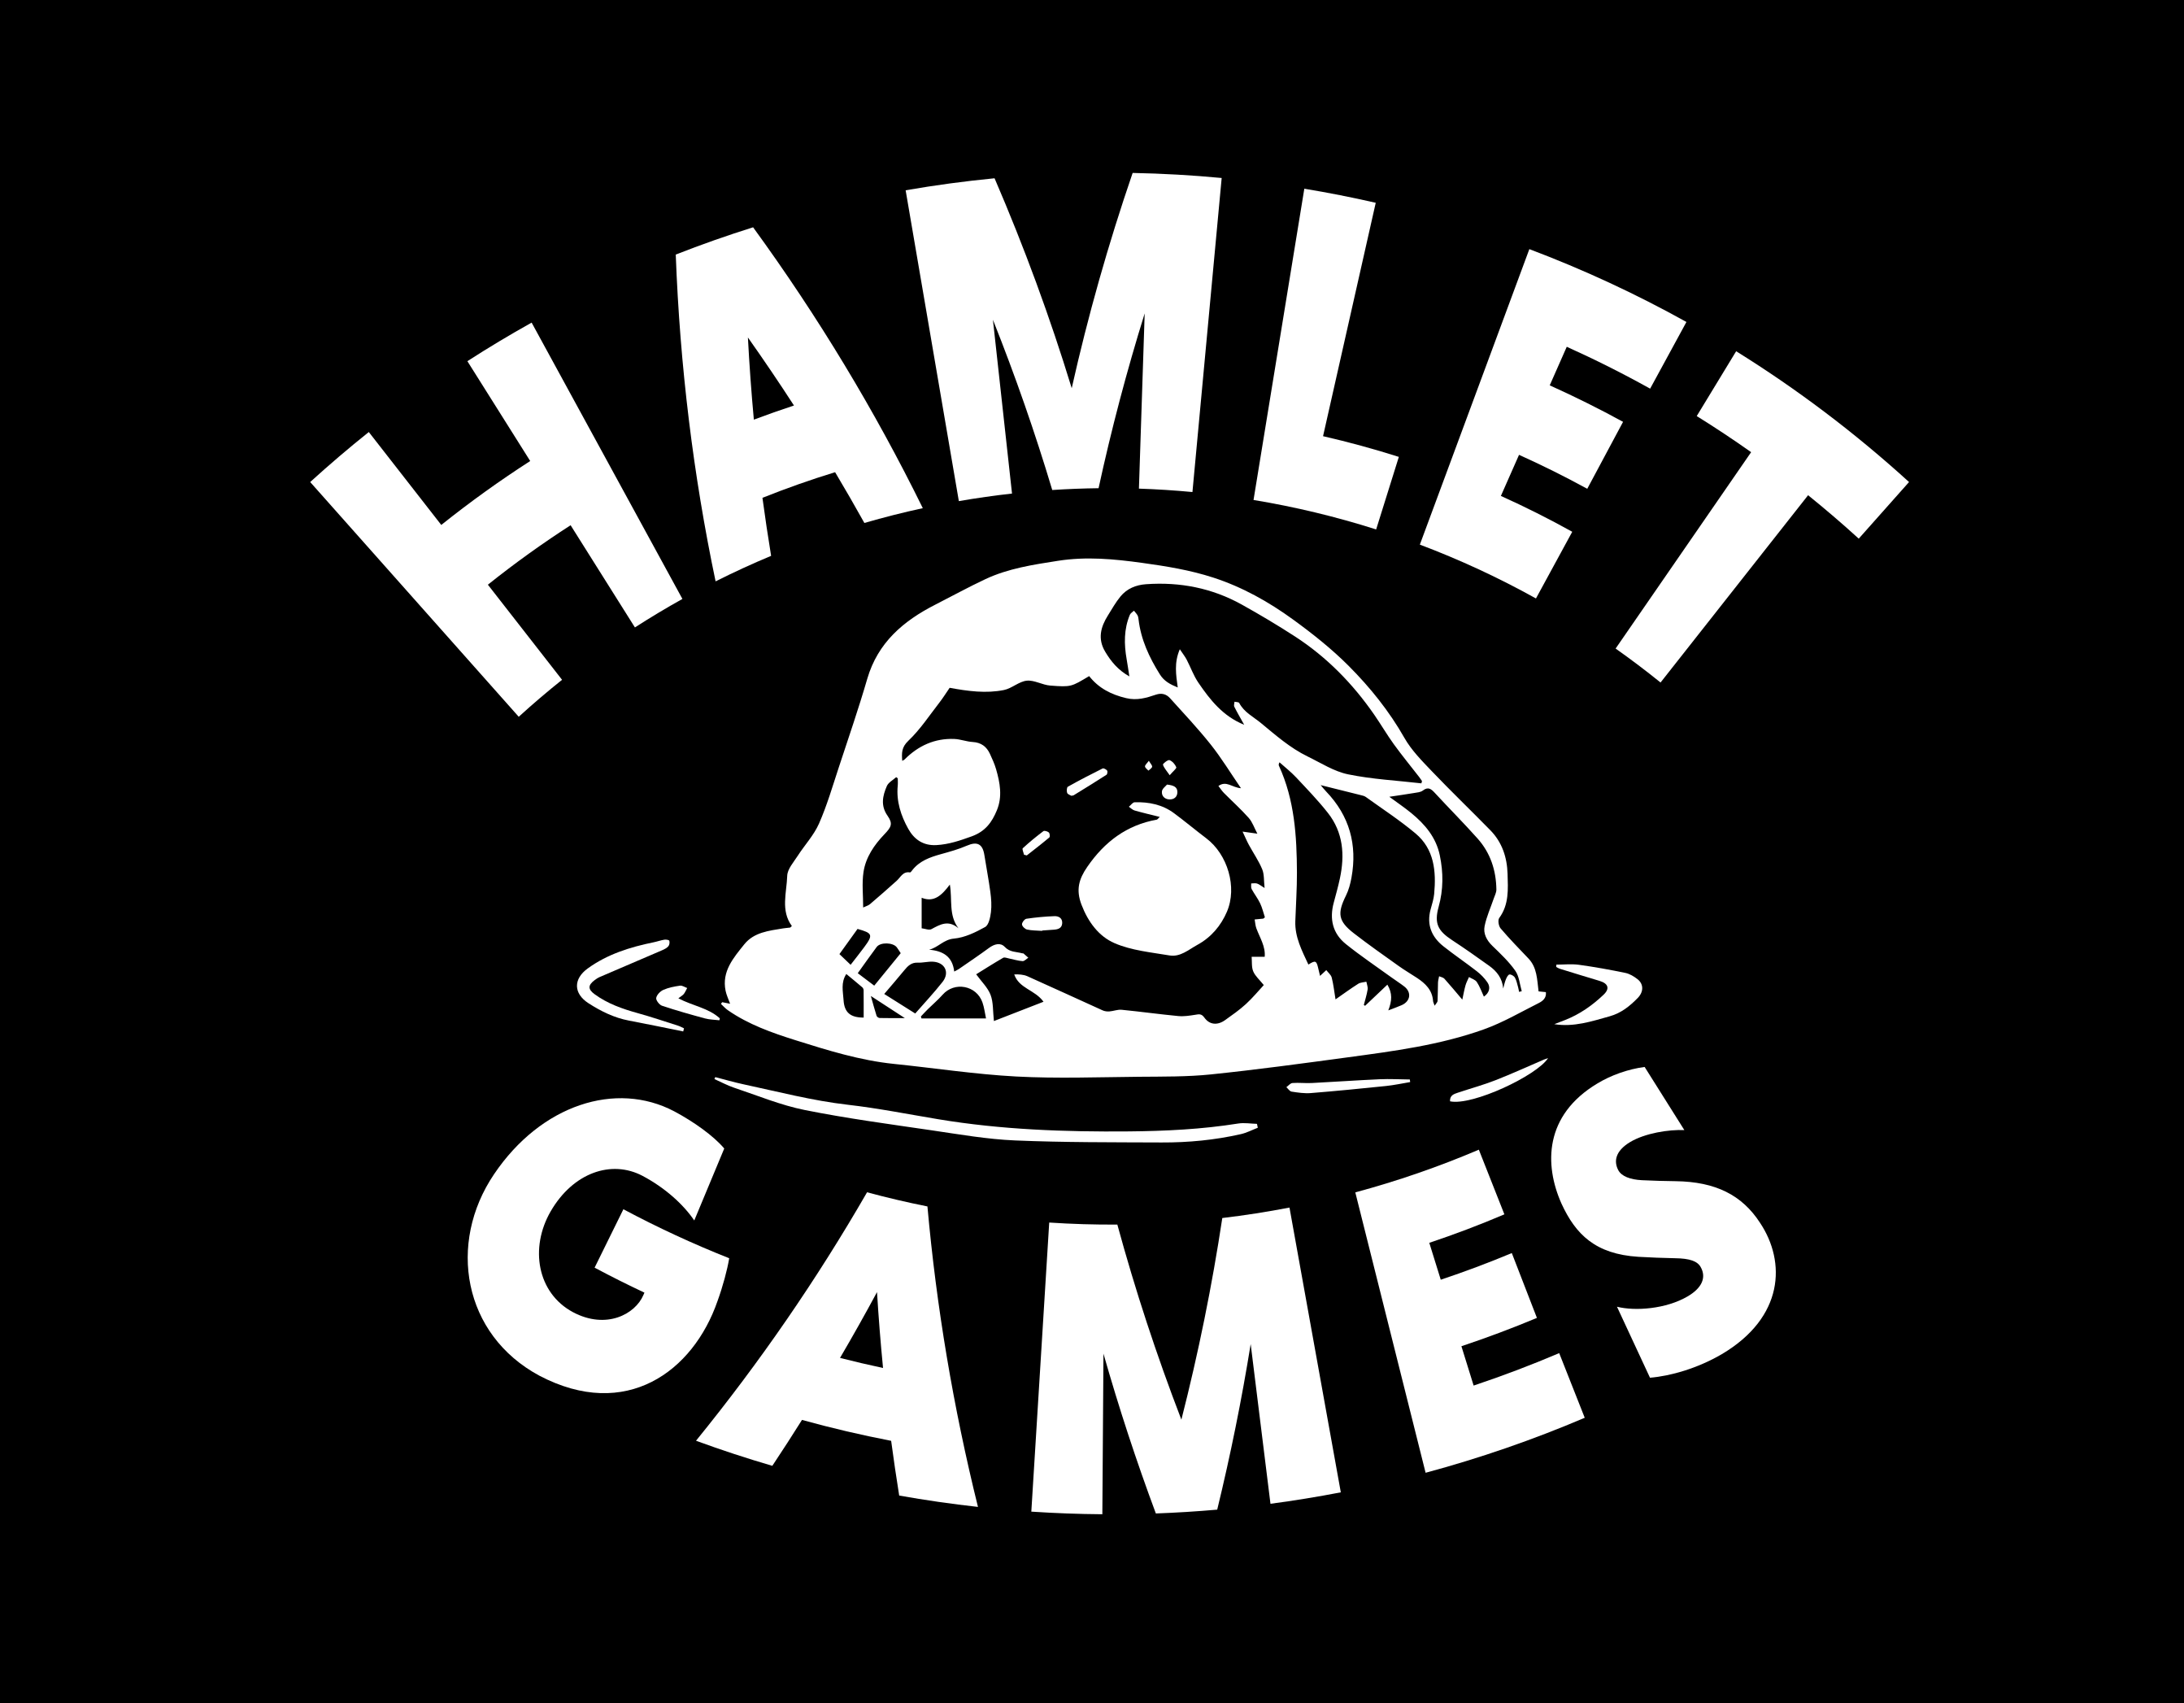 Hamlet-Games-Logo